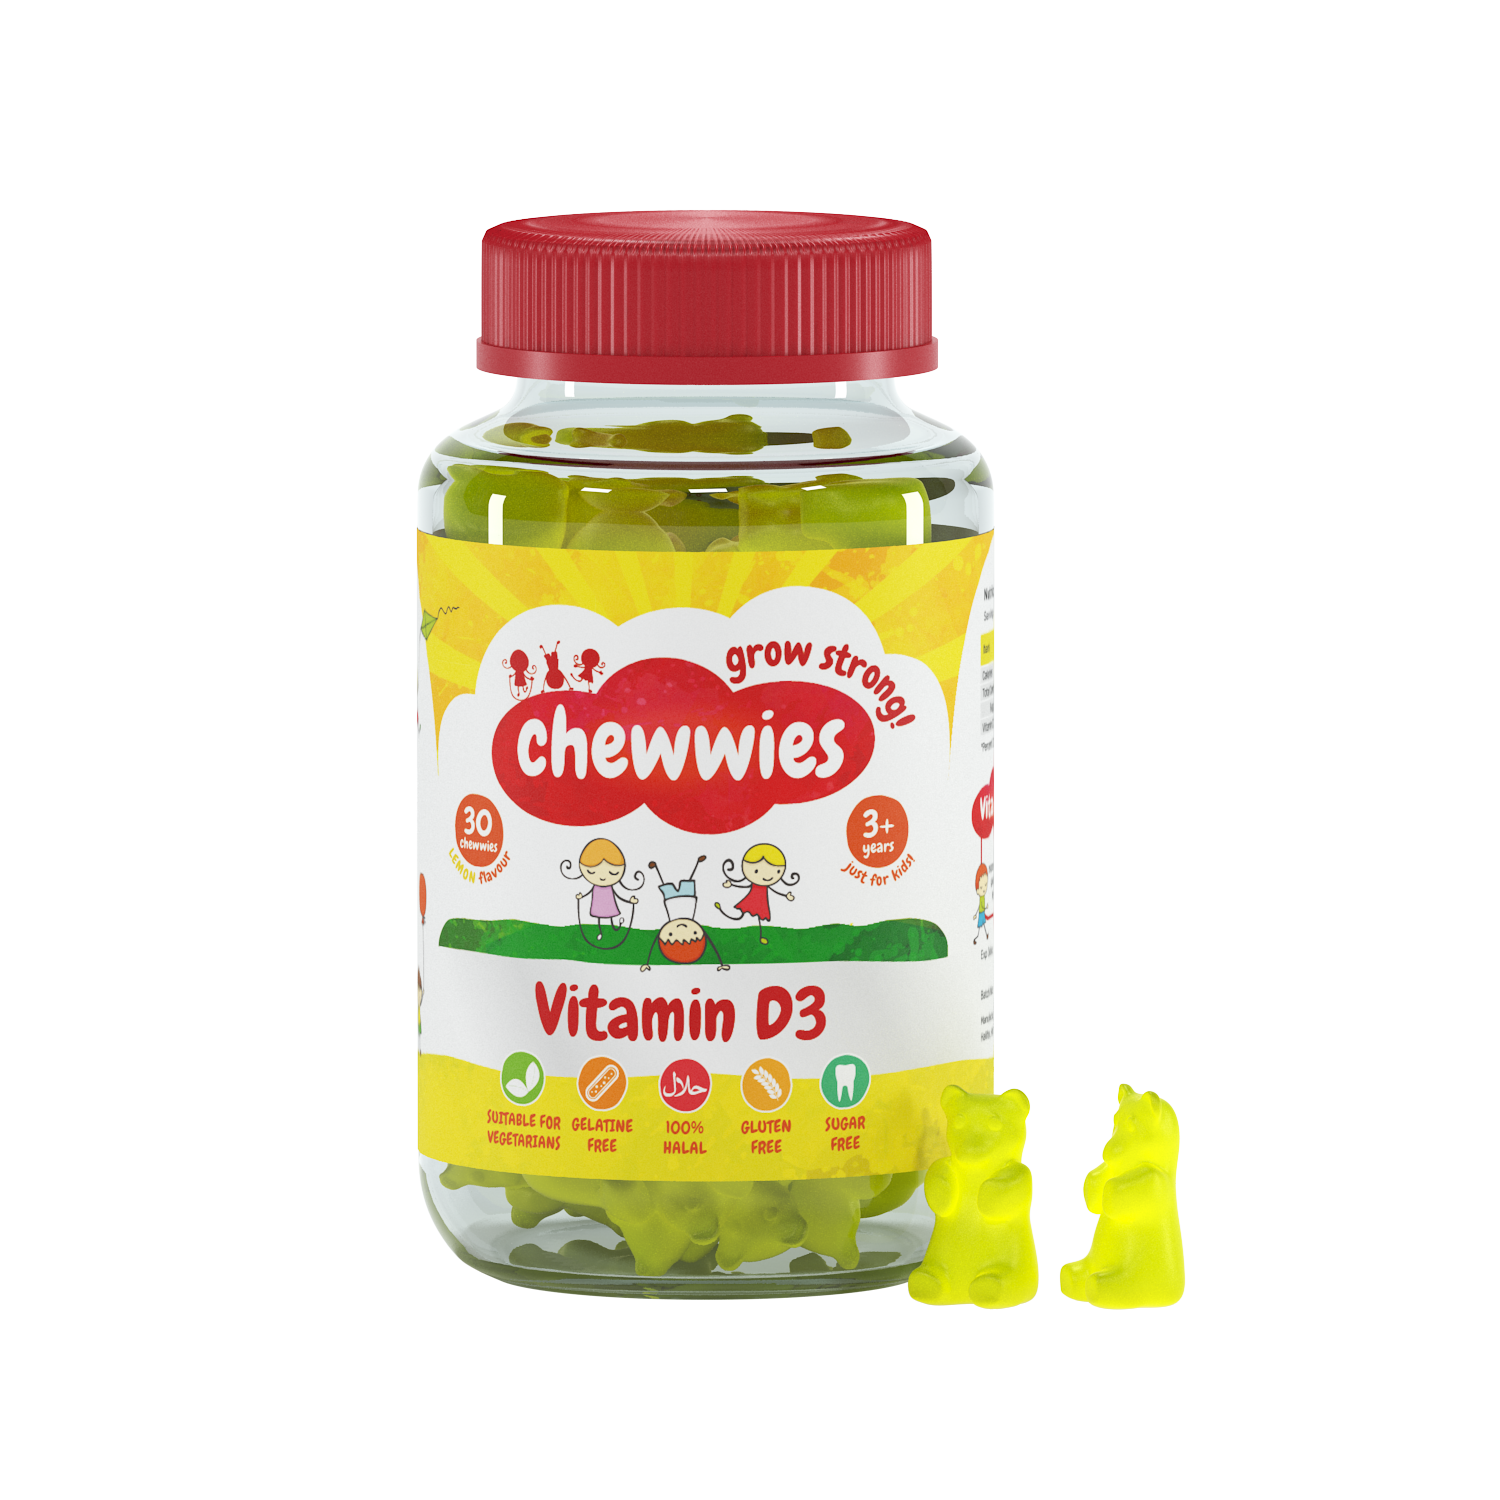 Chewwies Vitamin D3, 30 bonbons gélifiés végétaliens sans sucre avec des extraits d'agrumes pour favoriser une croissance et un développement sains.